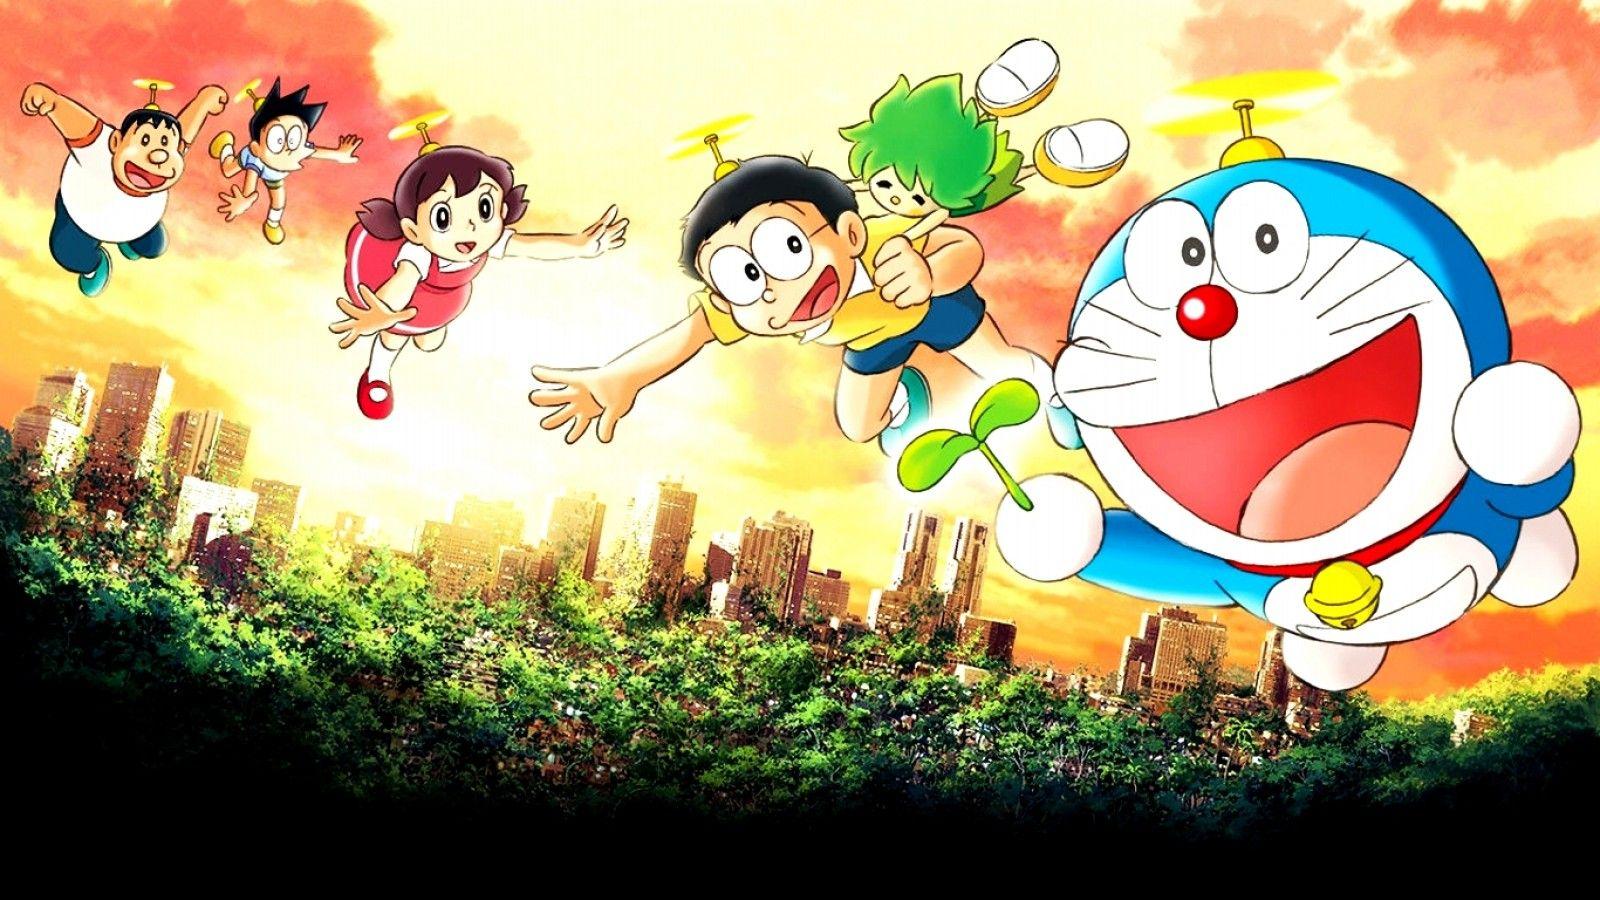 Doraemon Wallpapers HD: Màu sắc tươi tắn, chất lượng cao và hình ảnh Doremon đáng yêu, hãy chỉnh sửa điện thoại của bạn với bộ sưu tập Doraemon Wallpapers HD này.